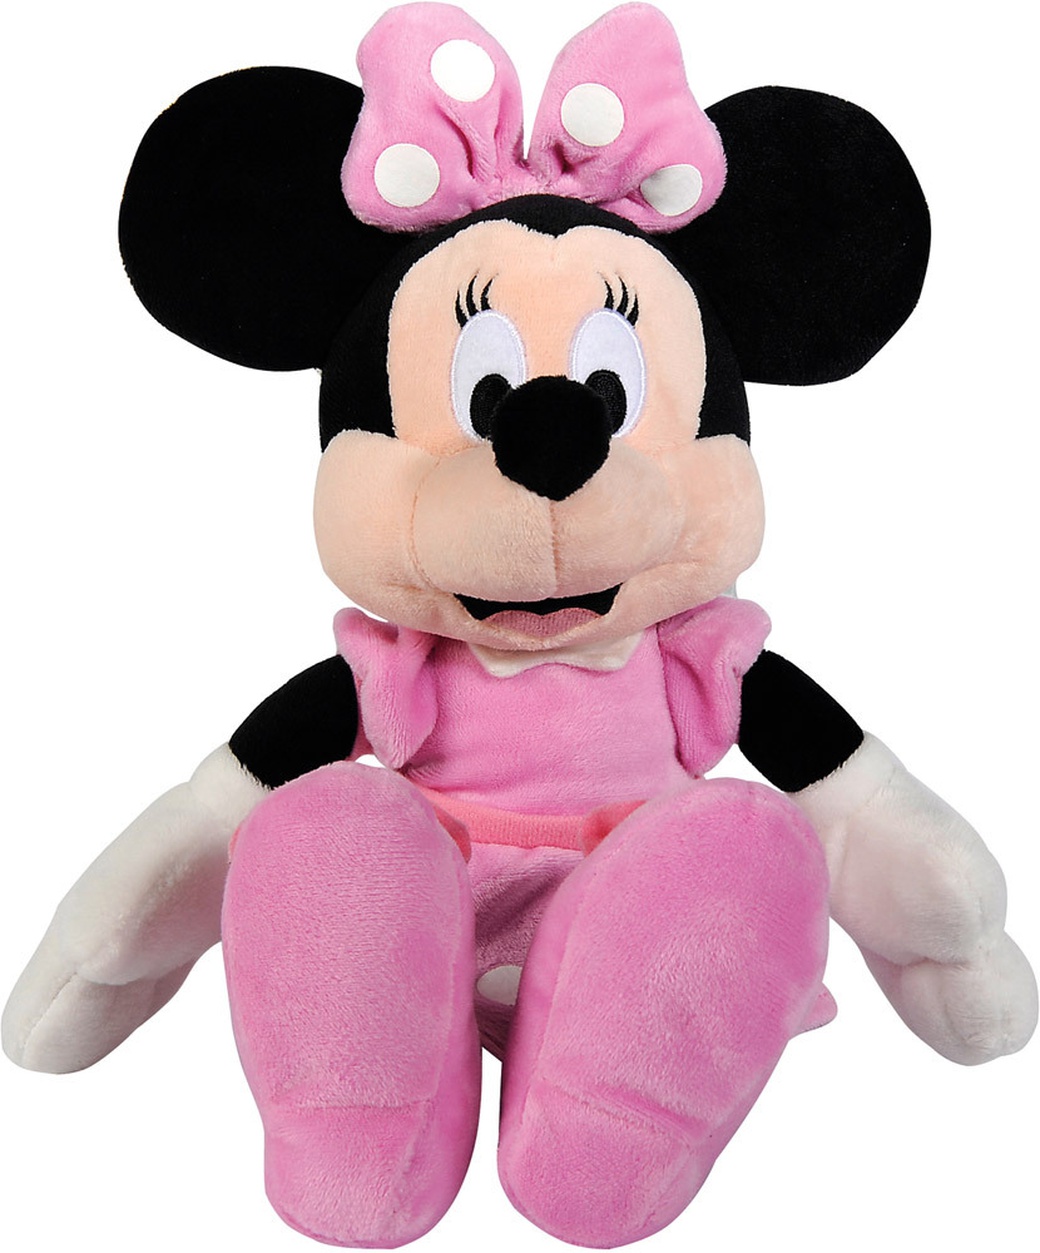 Nicotoy Мягкая игрушка Минни Маус в розовом платье, 20см фото